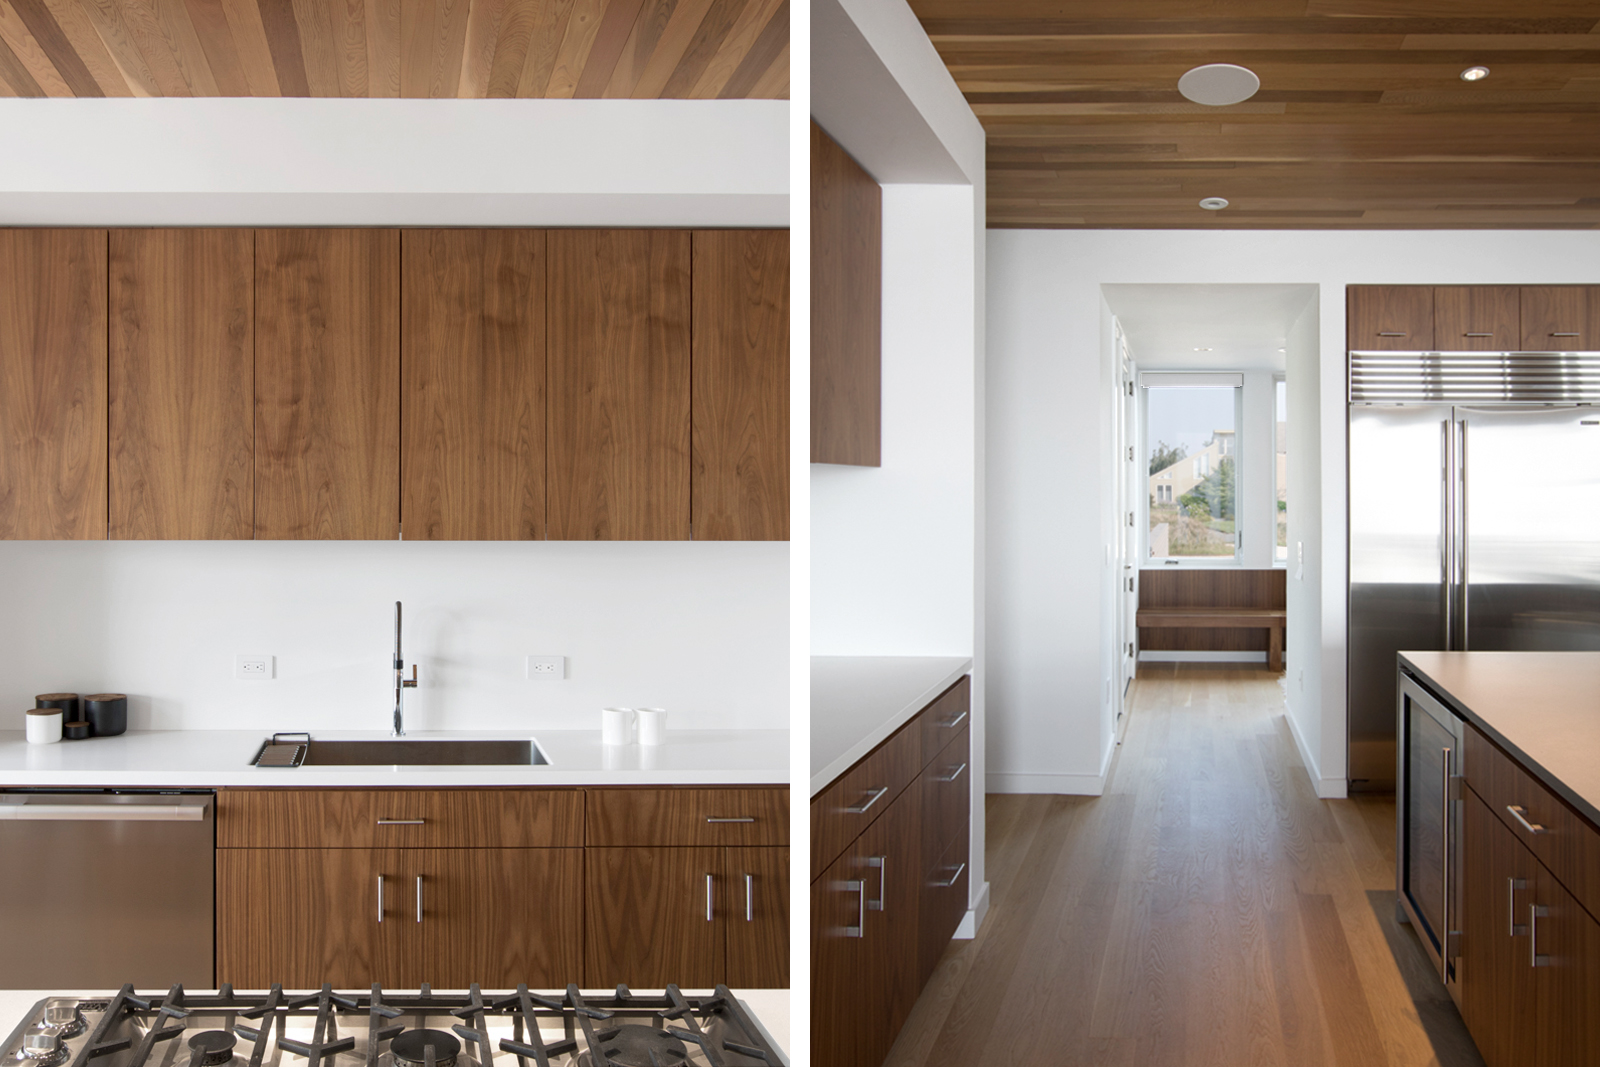 16-res4-resolution-4-architecture-modern-modular-house-prefab-home-north-fork-bluff-house-interior-kitchen-island-millwork.jpg